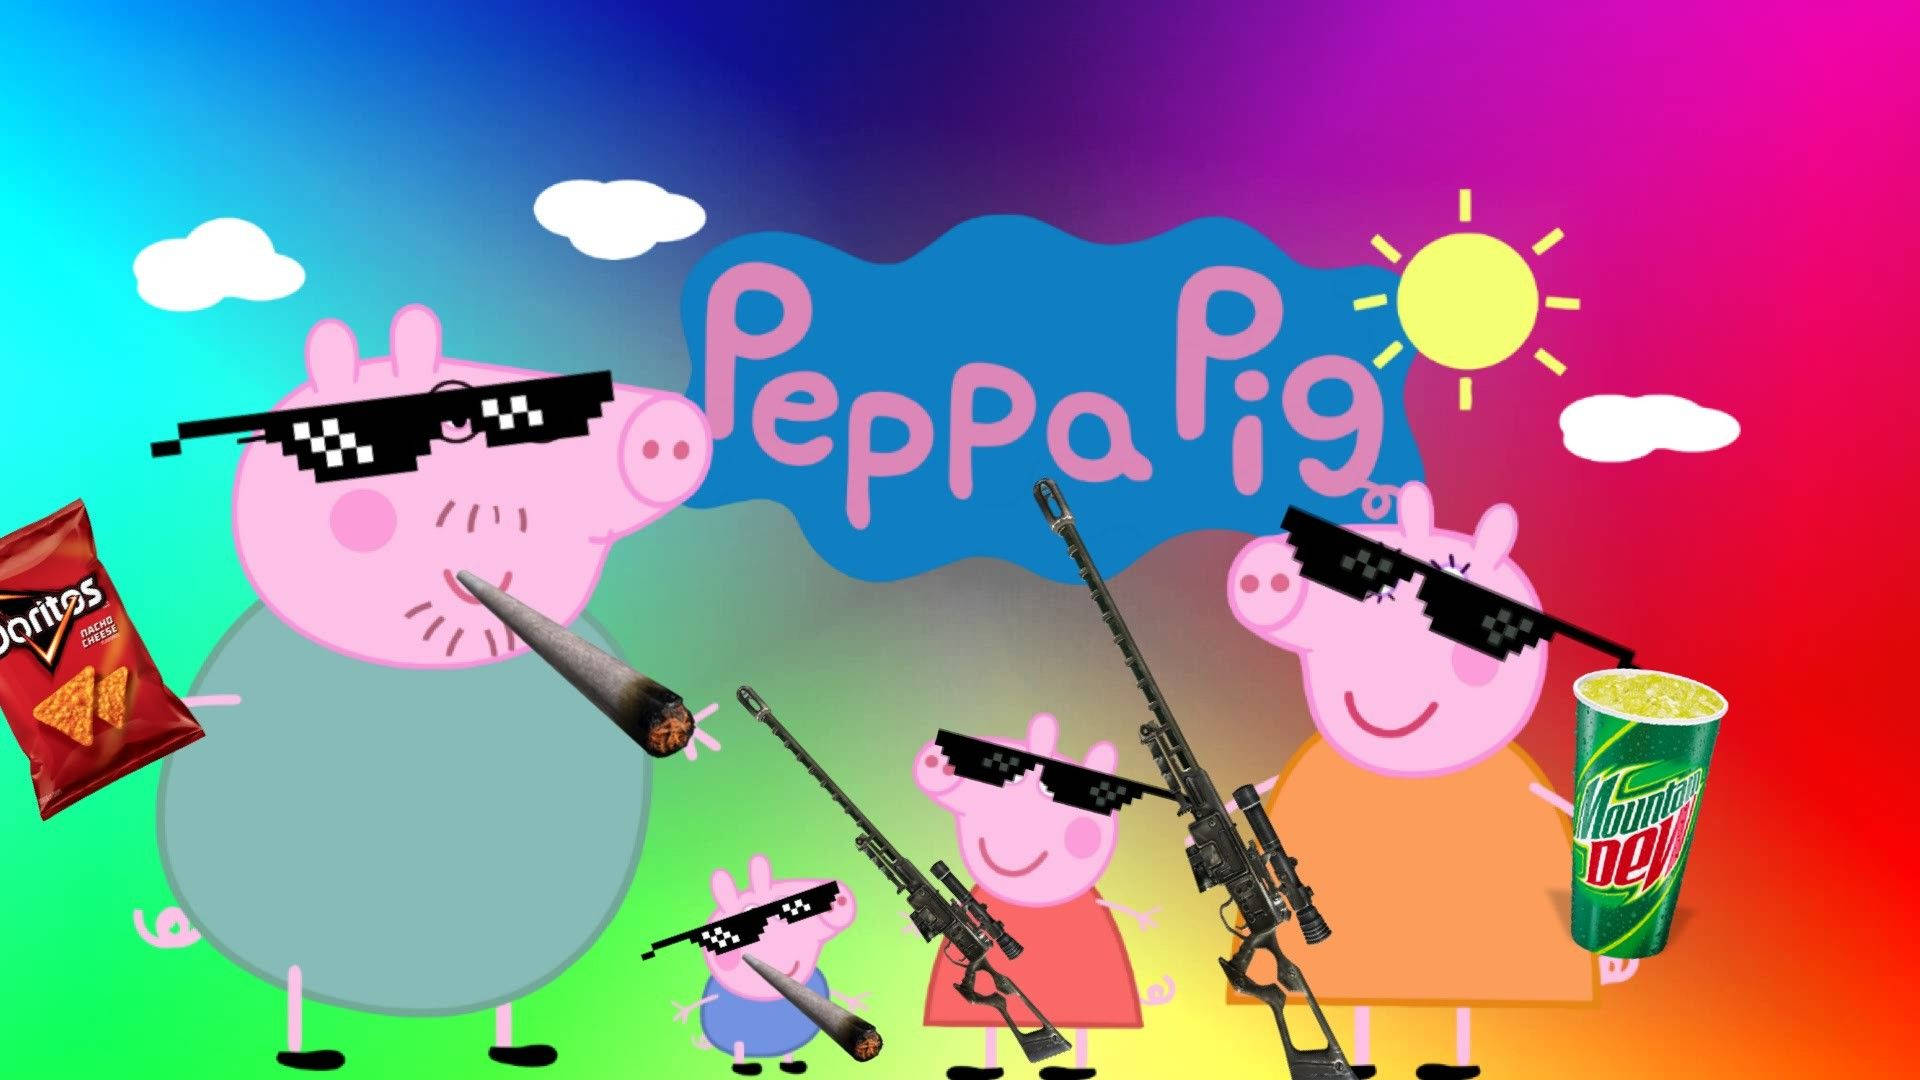 Badass Peppa Pig fan art wallpaper.